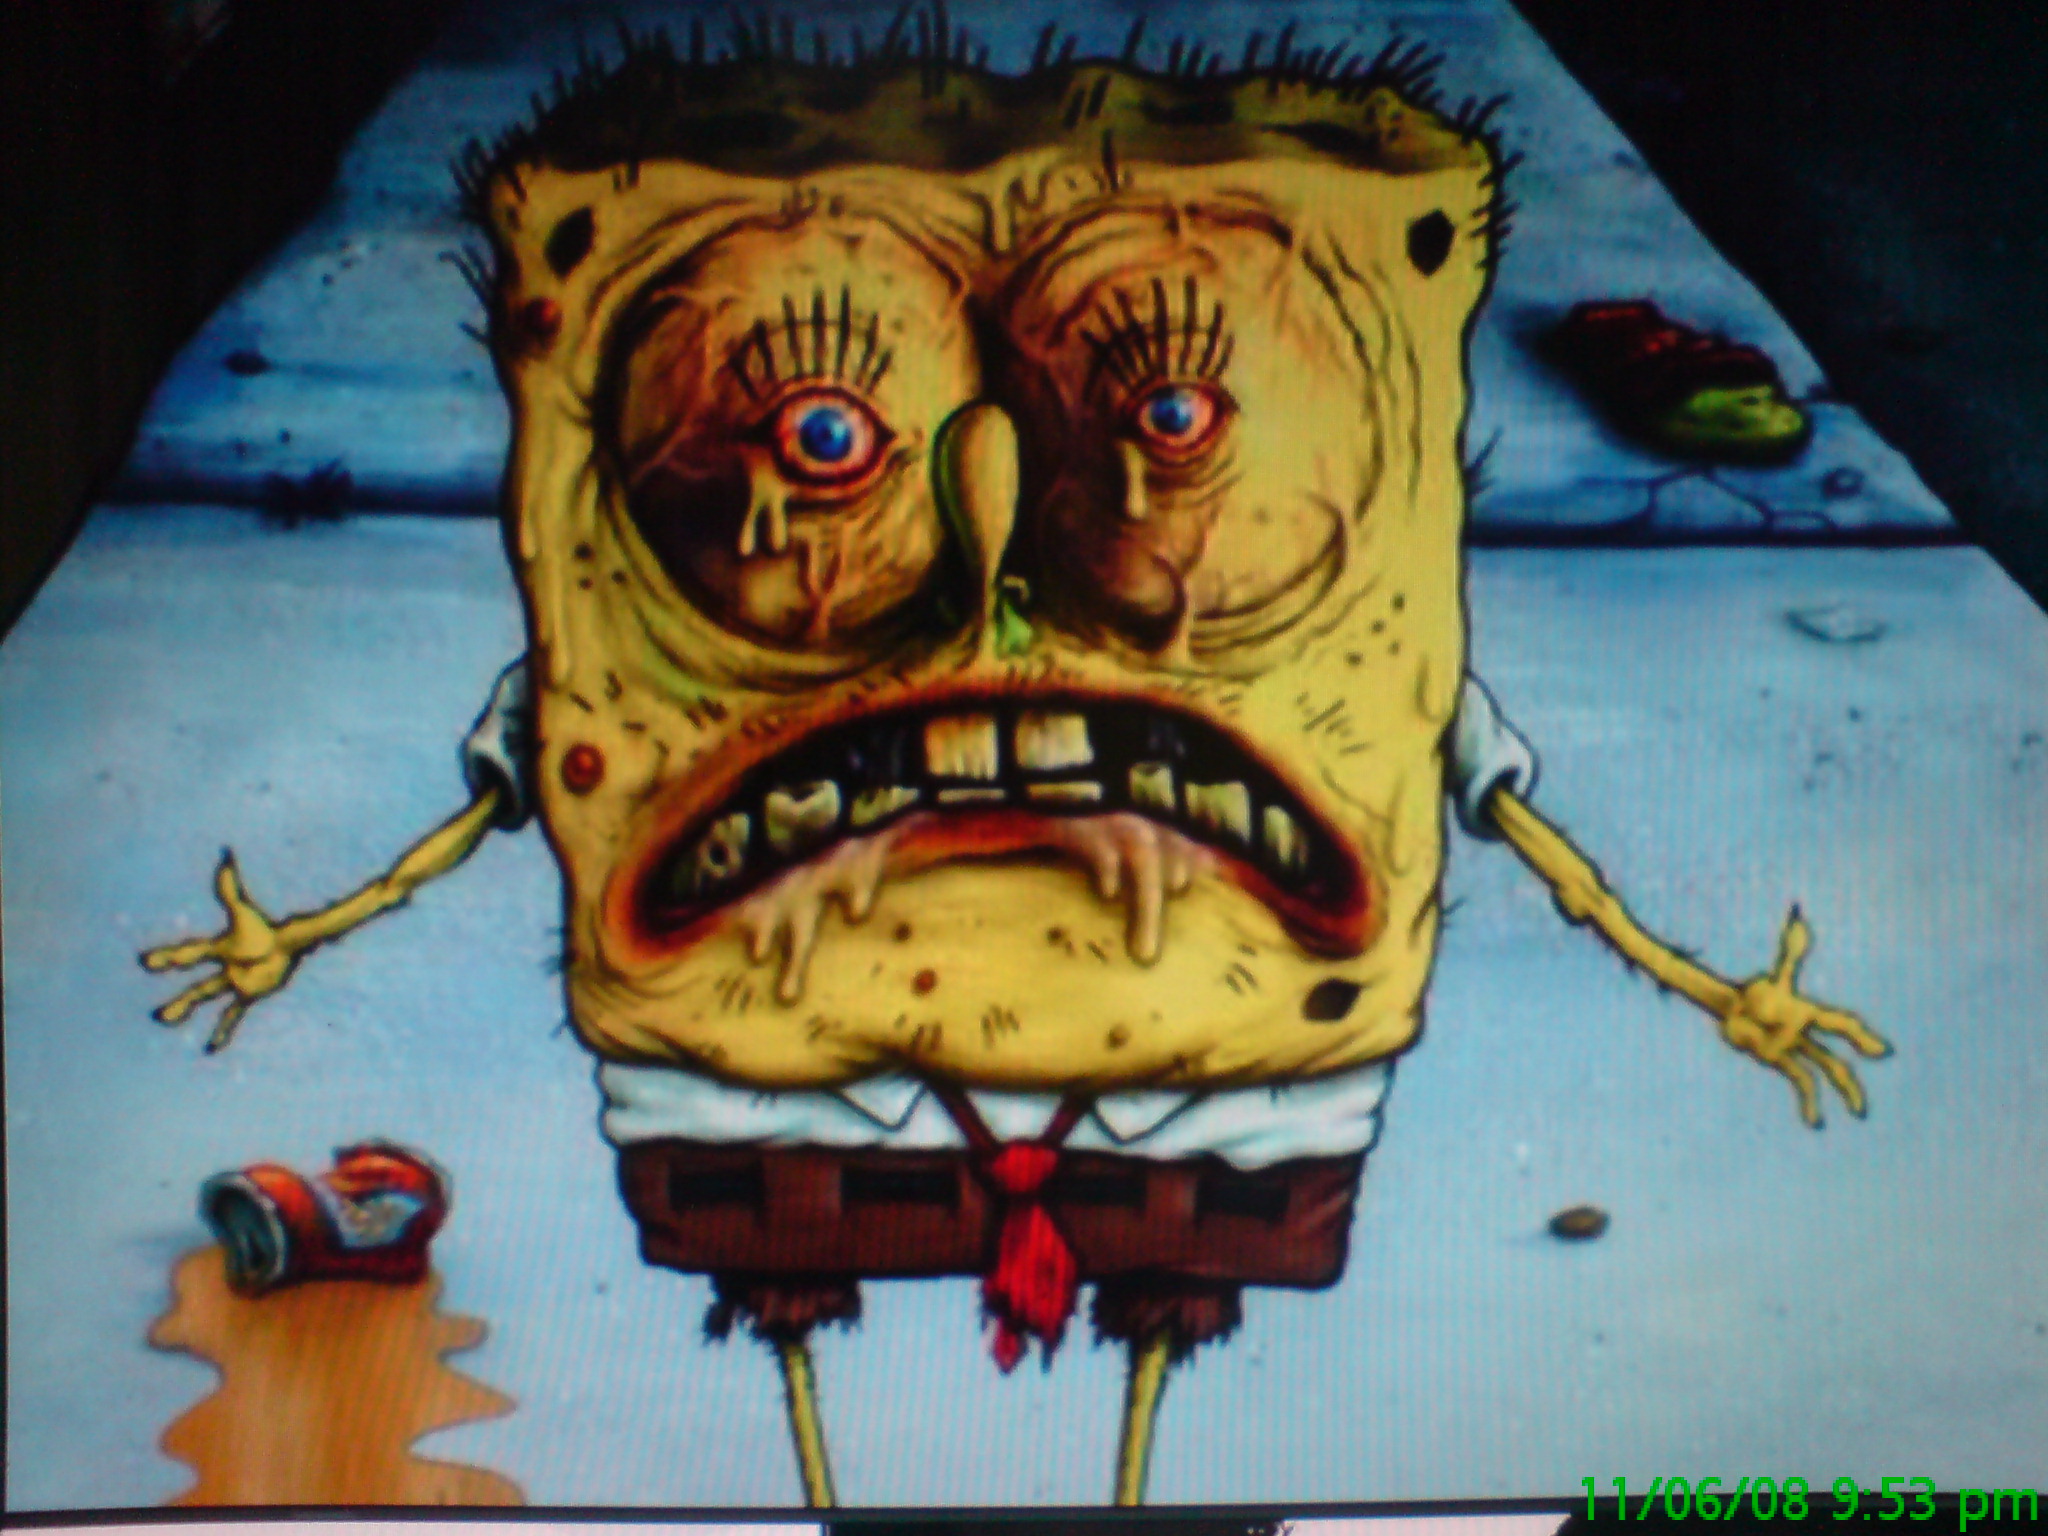 Spongebob's Theme Music at -800% Speed is Horrifying - Modern Horr...